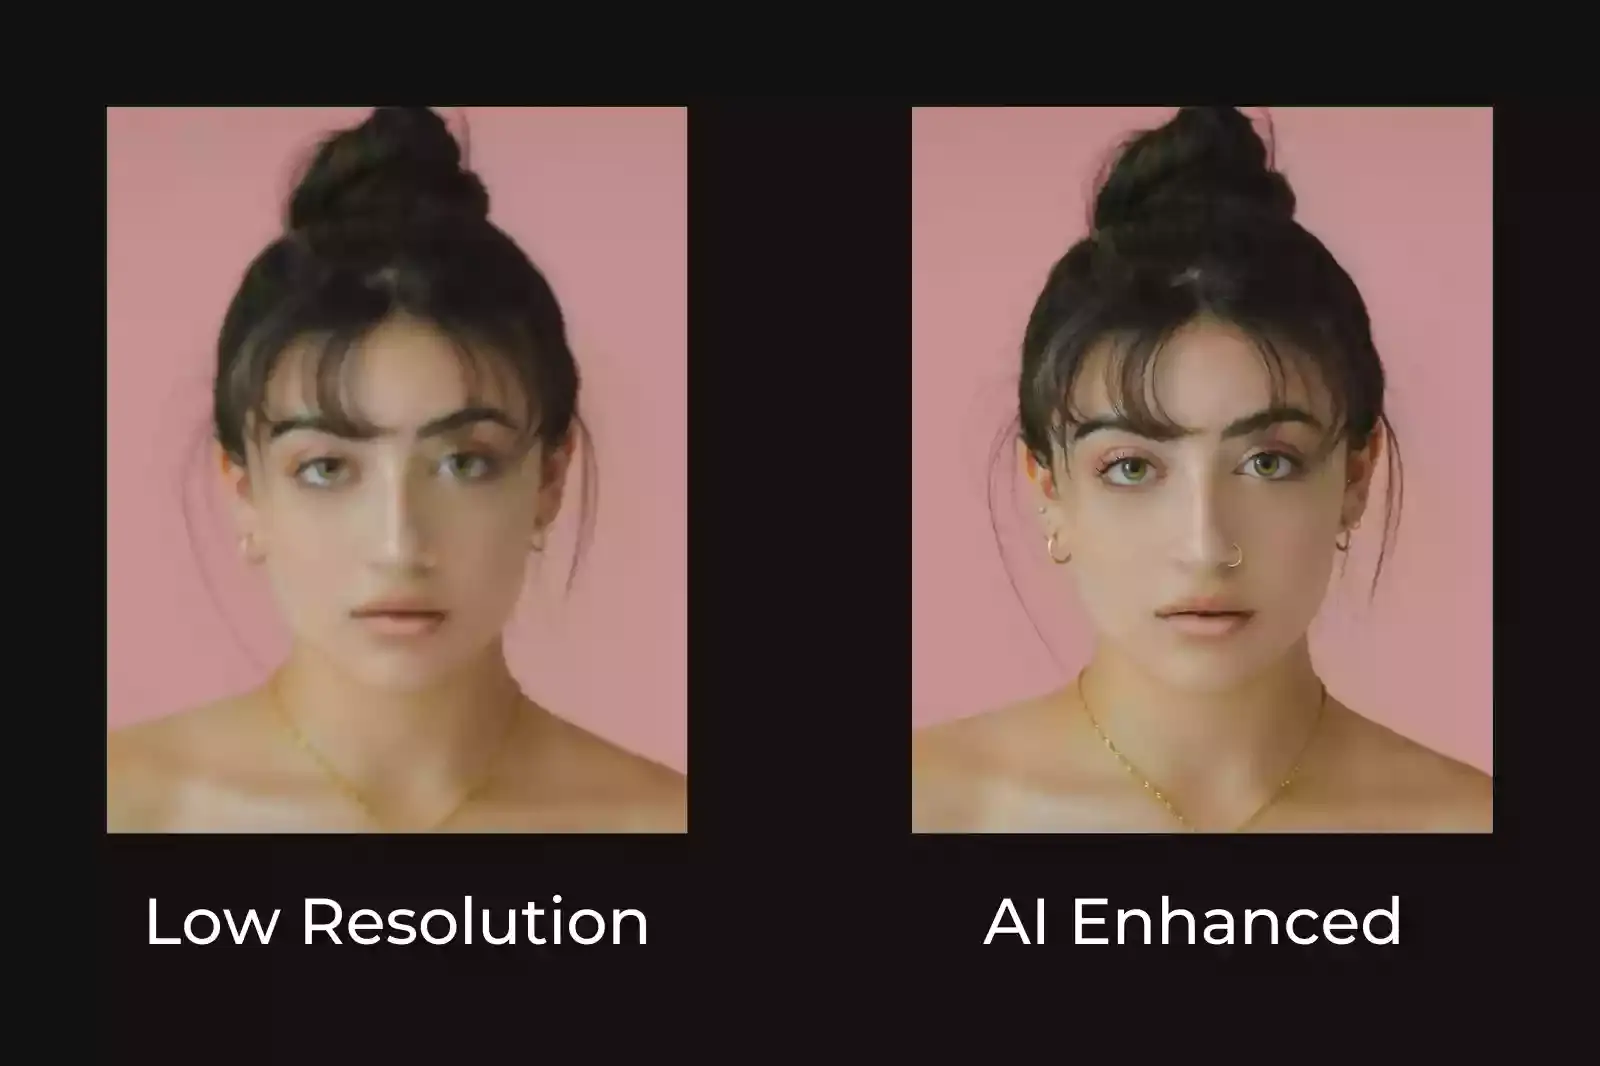 About AI Image enhancement